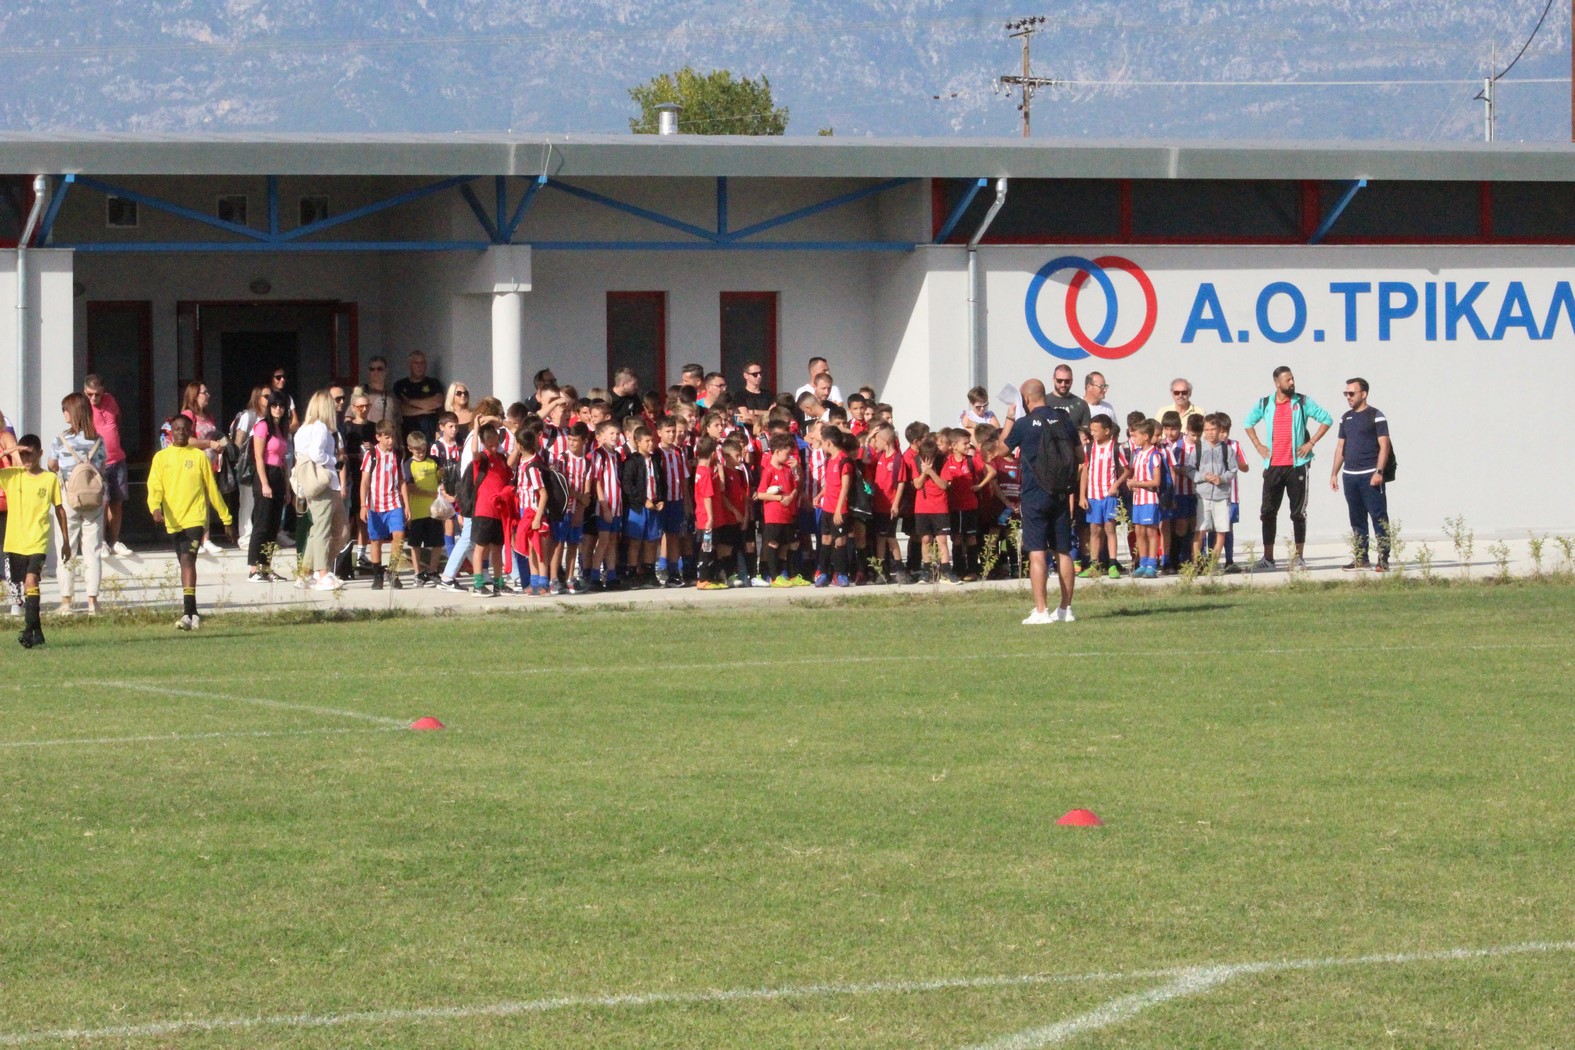 Πανδαισία ποδοσφαίρου στο τουρνουά της Ποδοσφαιρικής Ακαδημίας του ΑΟΤ (φωτο)